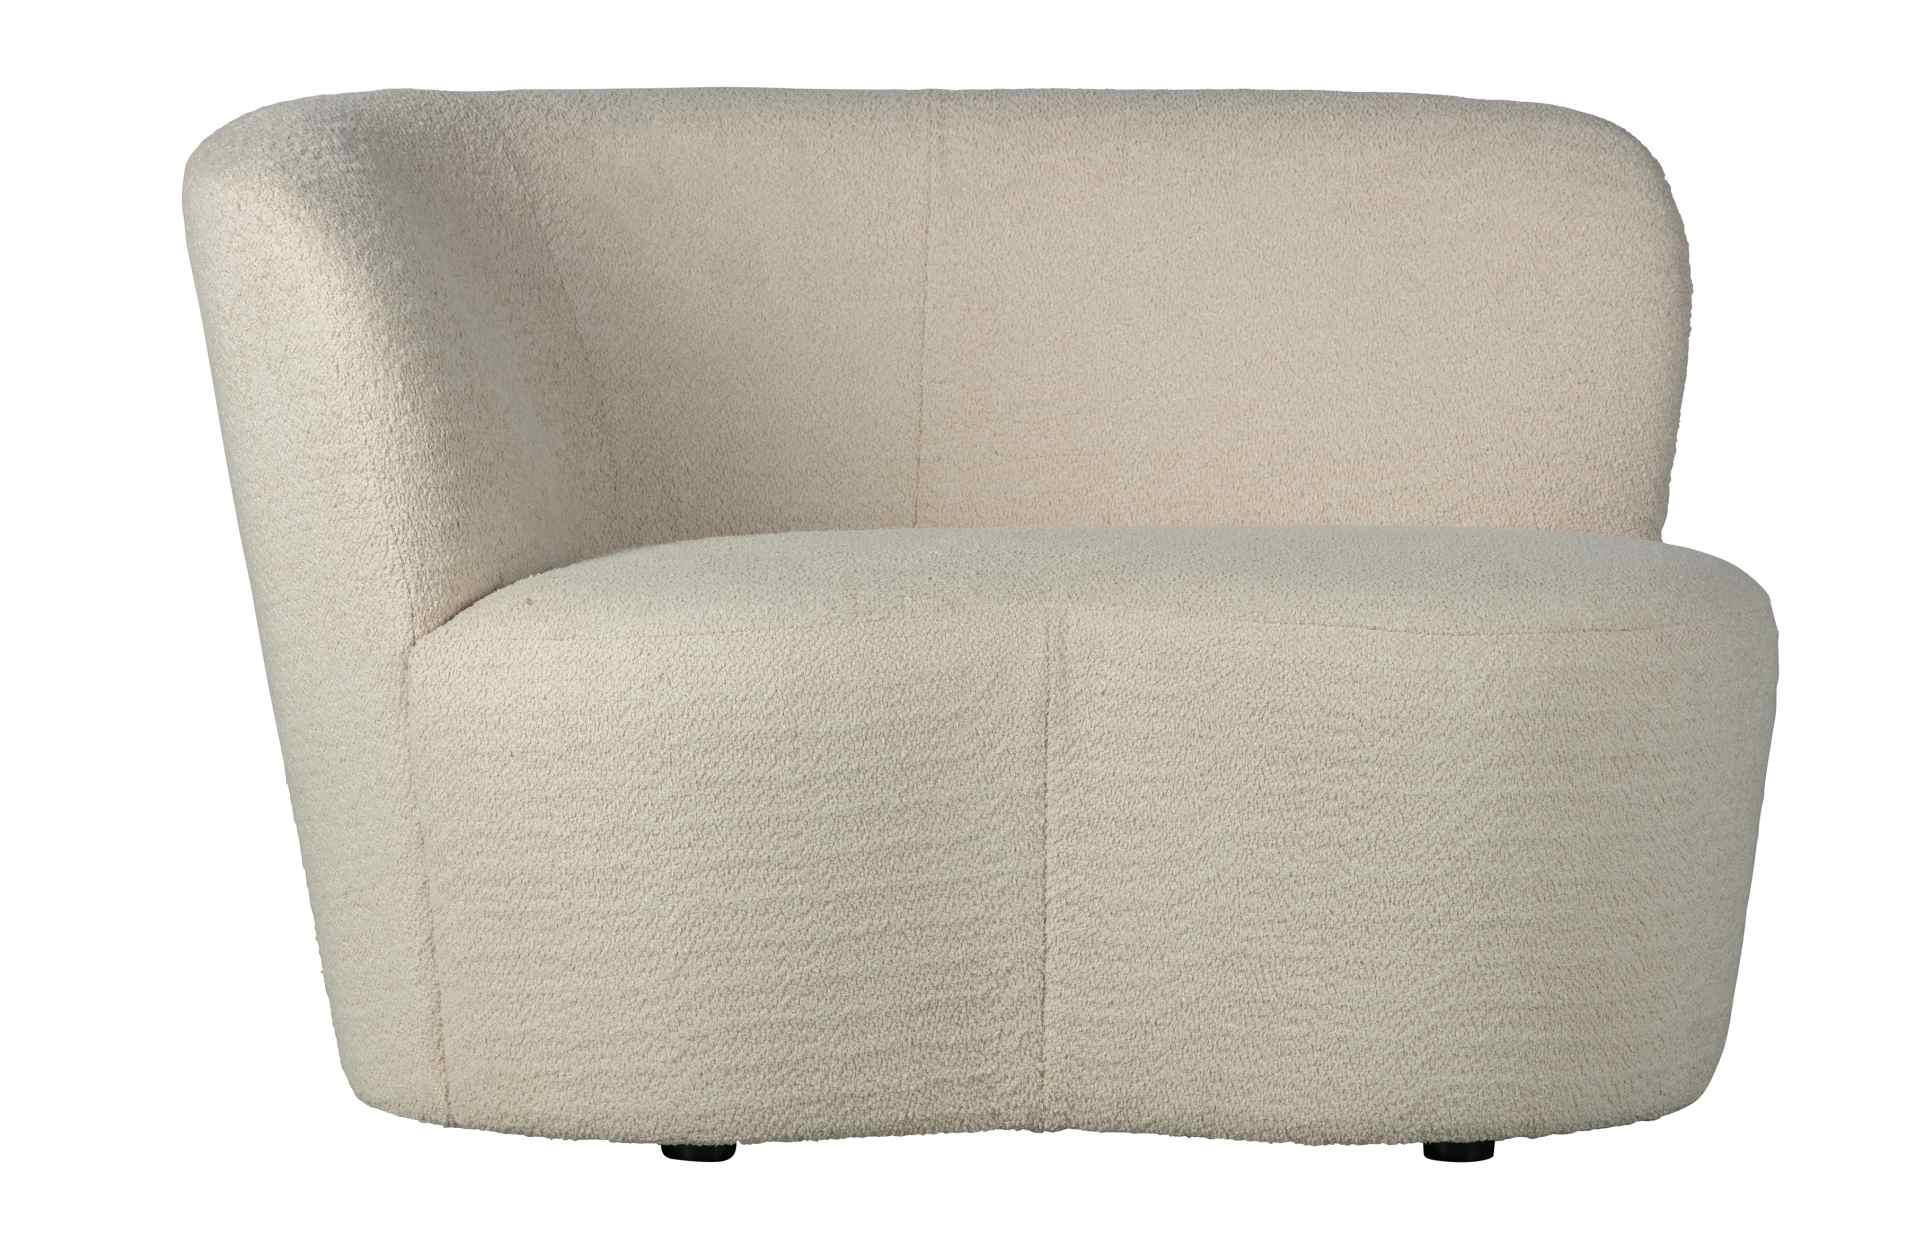 Das kleine Sofa Stone hat ein niedliches Design. Die Ausführung in links und cremigen Farbton passt sich jeder Inneneinrichtung an.